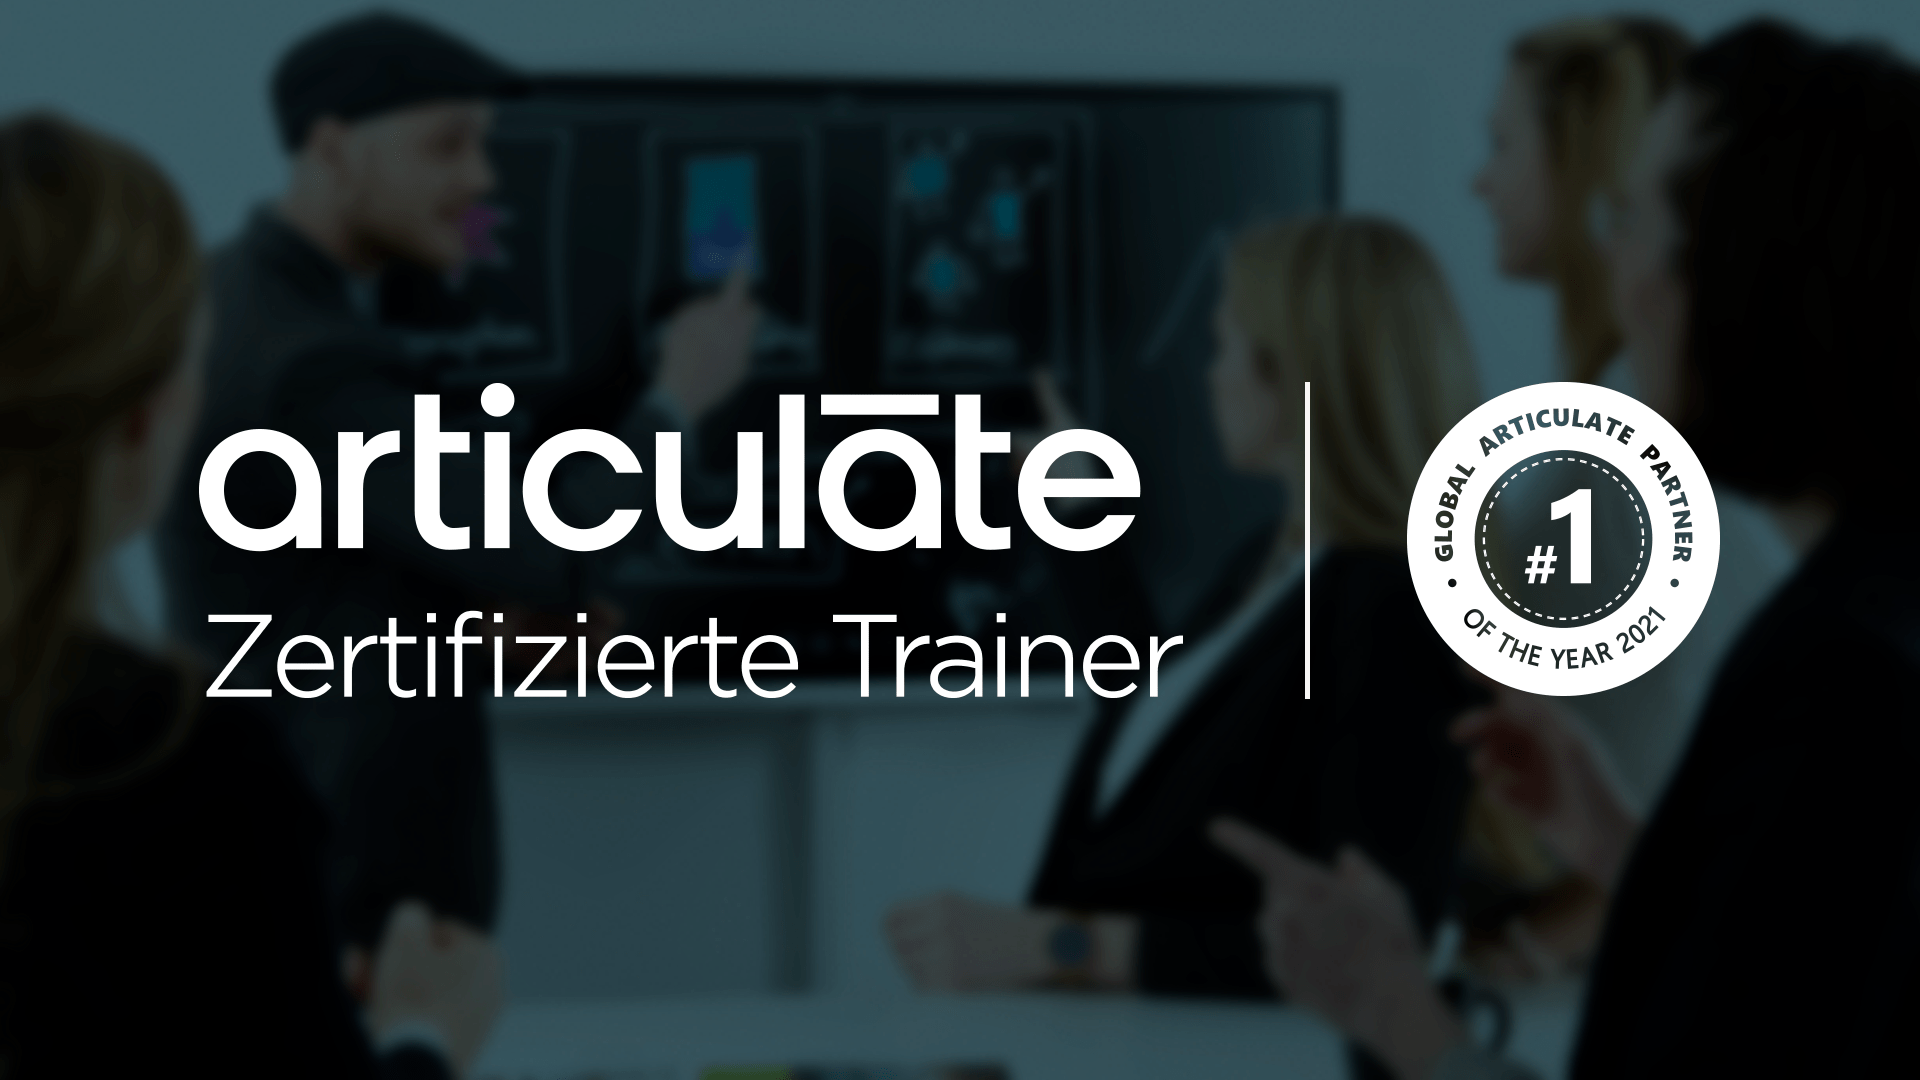 Die Interlake ist zertifizierter Schulungspartner von Articulate und prämierter Global Partner of the year 2021